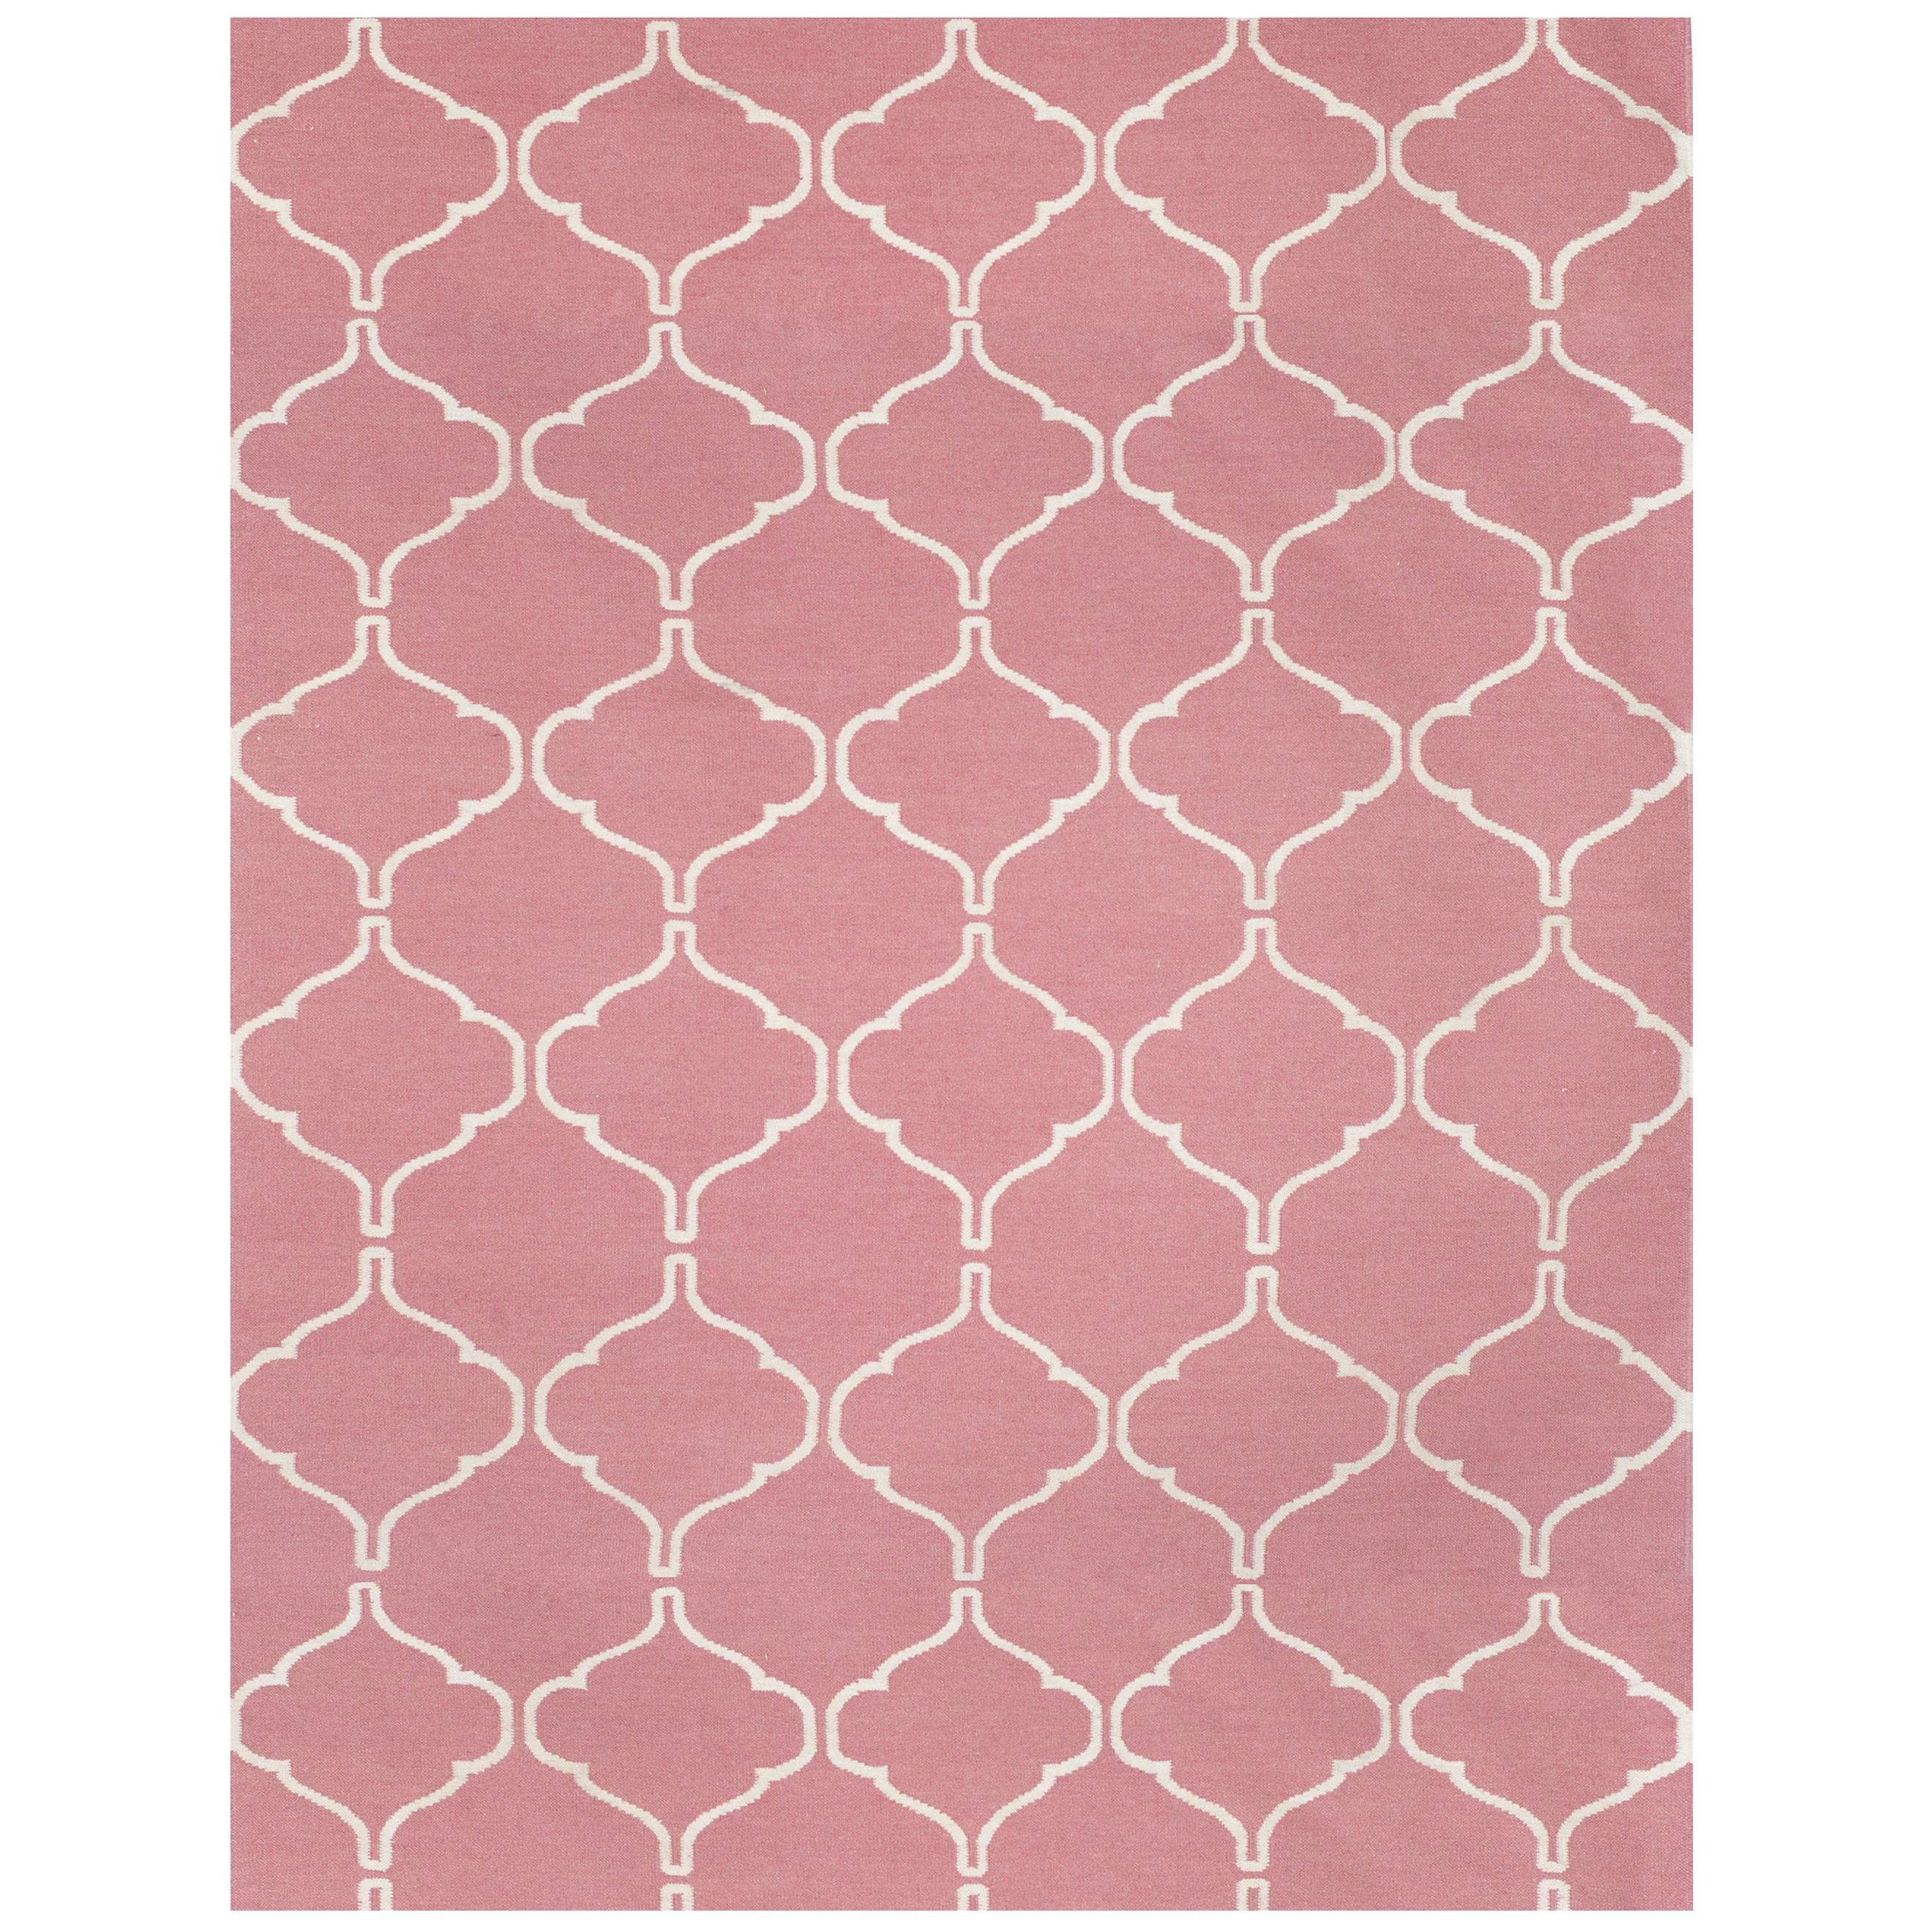 Moderner handgewebter Flachgewebe-Kelim-Teppich aus Wolle im marokkanischen Stil in Rosa und Weiß